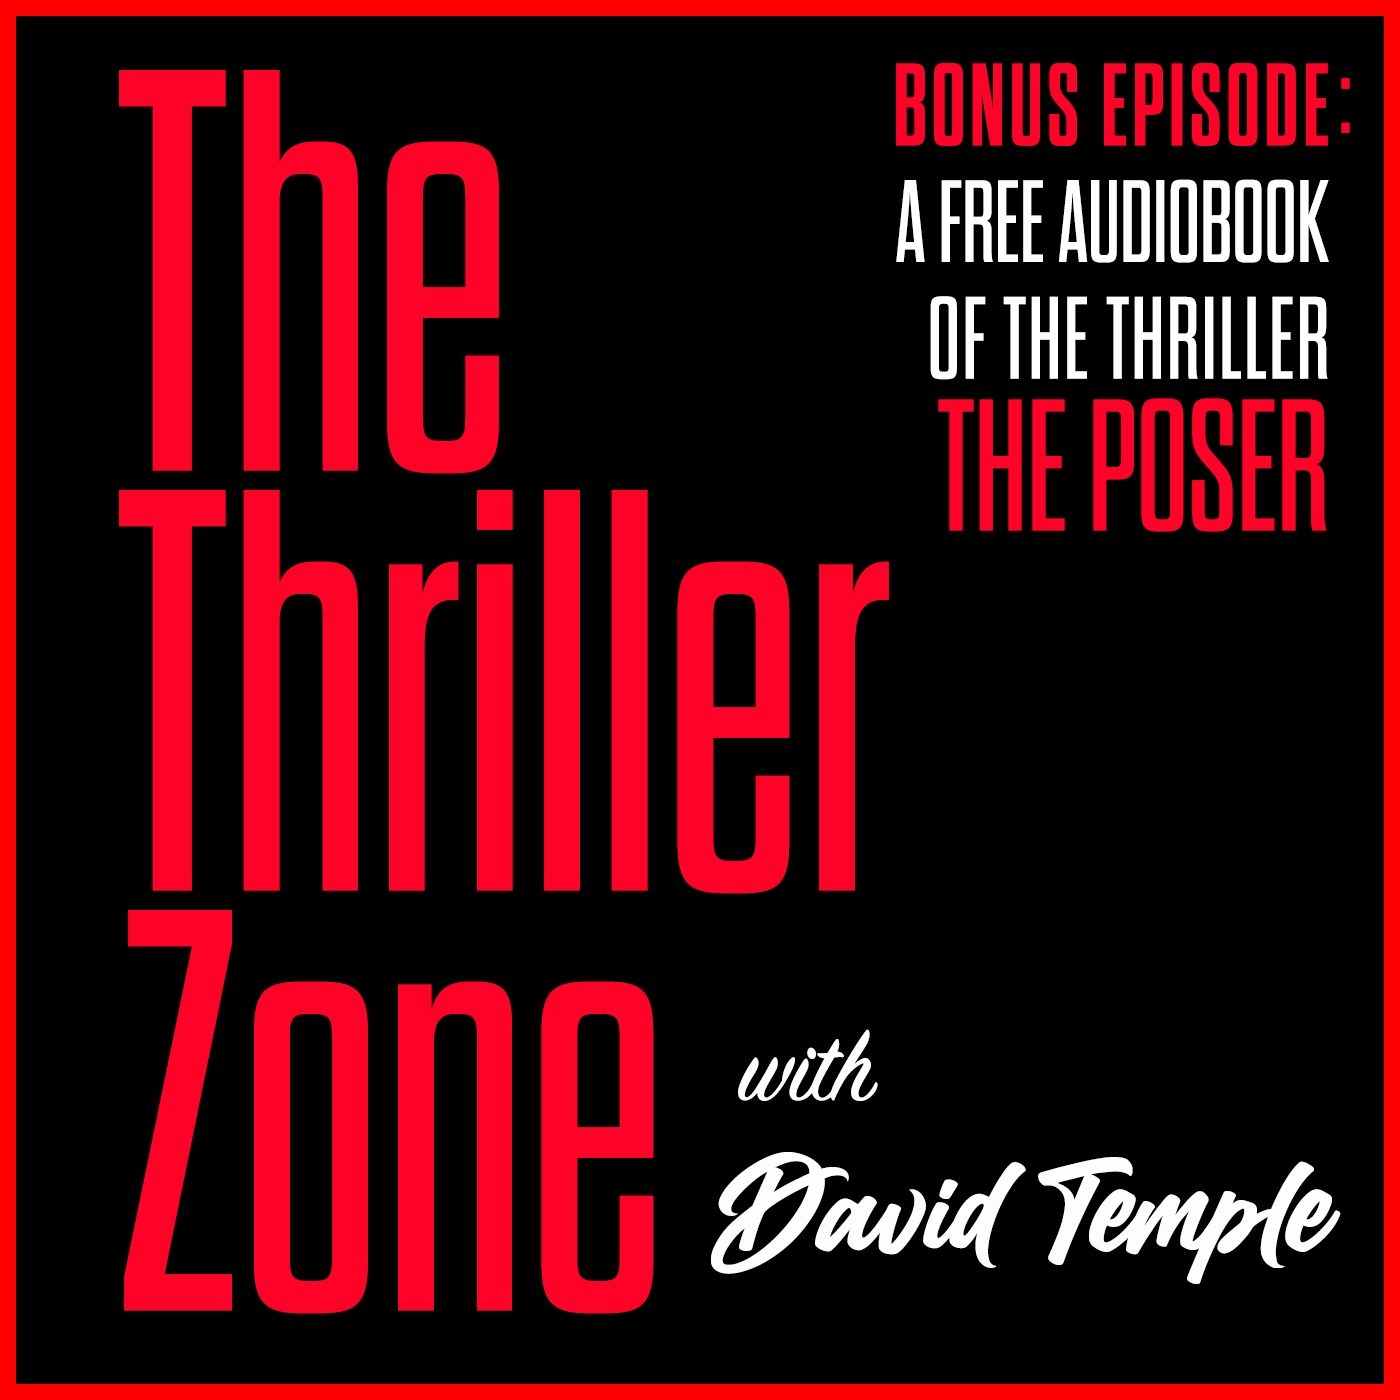 Artwork for podcast The Thriller Zone